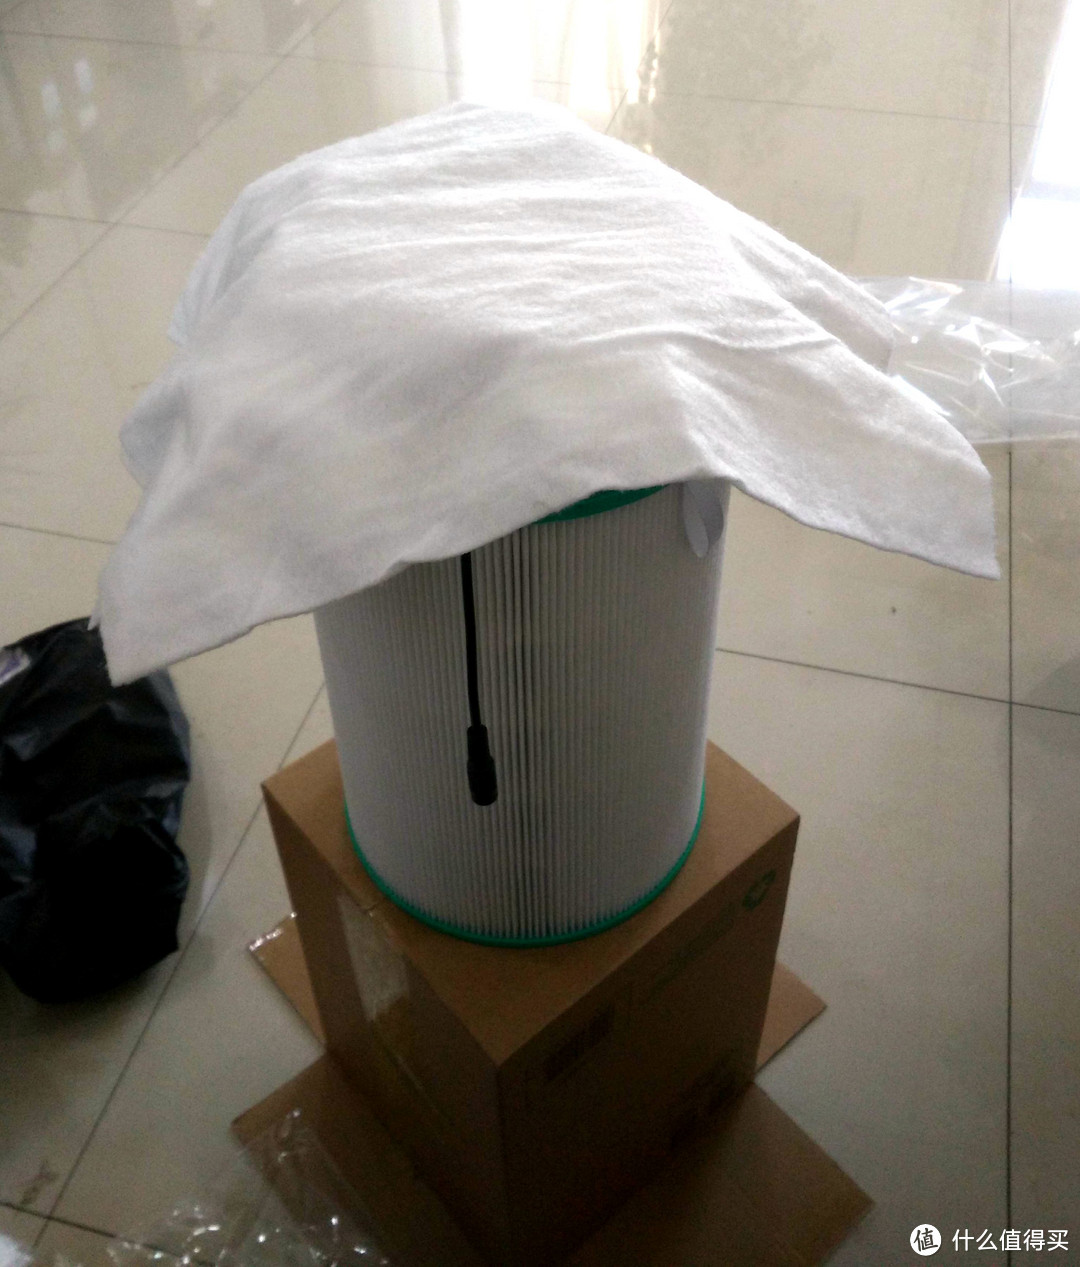 对抗雾霾 — 超简单DIY纸箱版空气净化器及简单评测